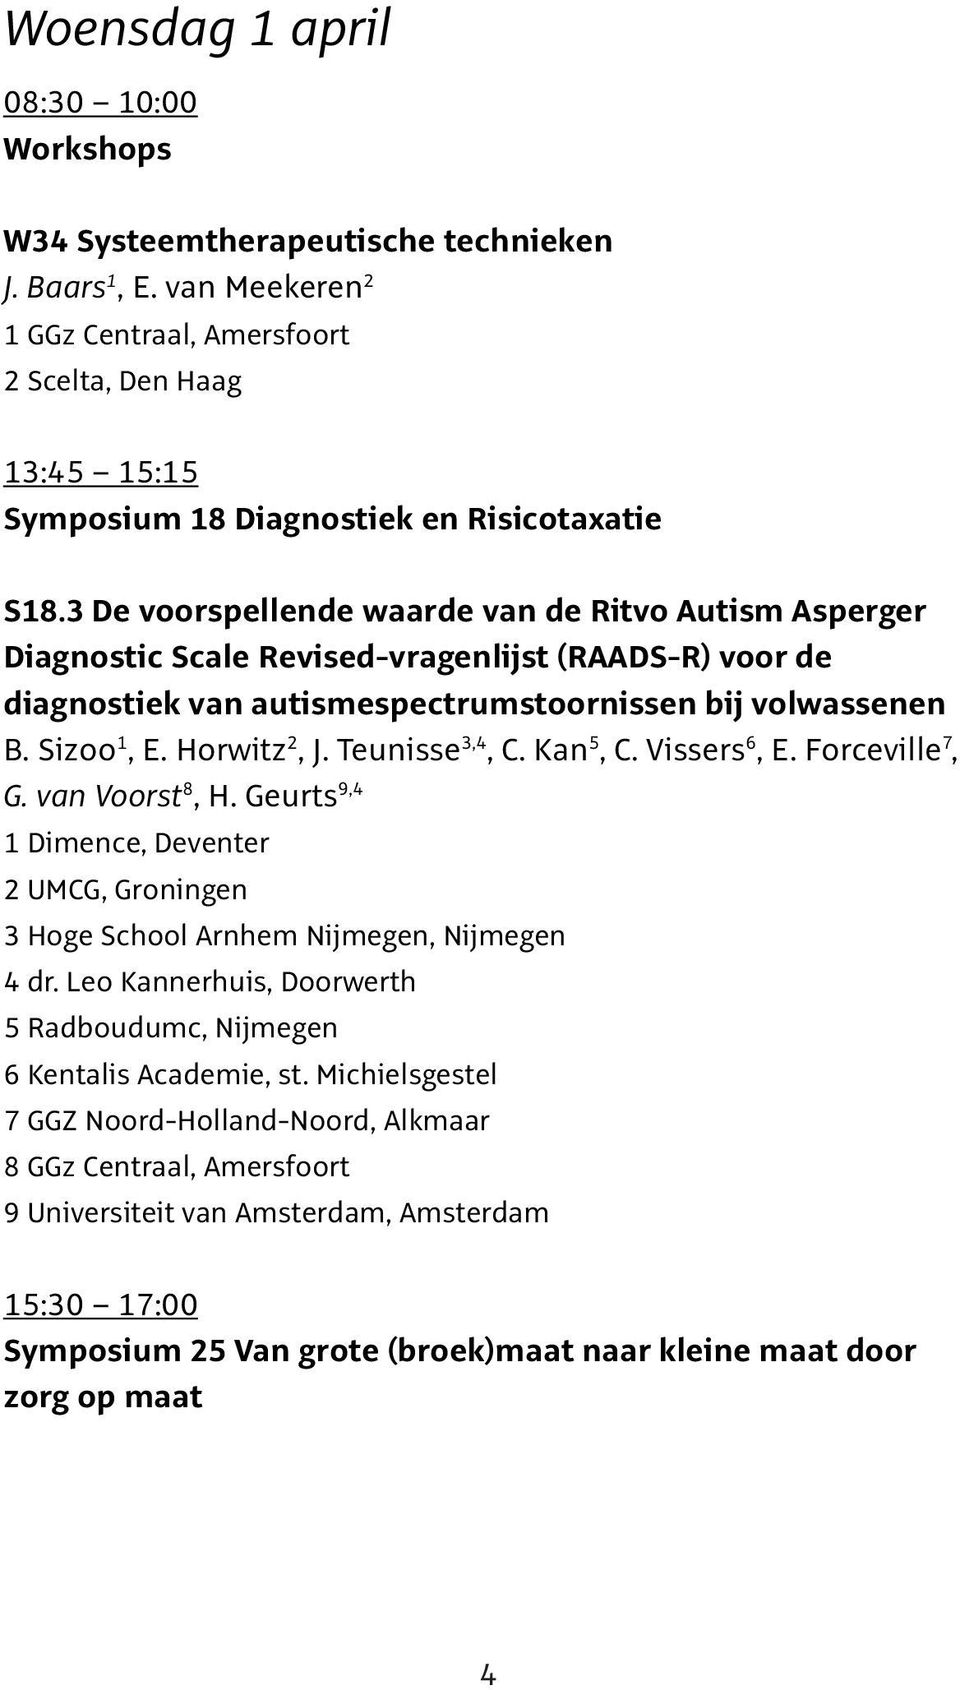 3 De voorspellende waarde van de Ritvo Autism Asperger Diagnostic Scale Revised-vragenlijst (RAADS-R) voor de diagnostiek van autismespectrumstoornissen bij volwassenen B. Sizoo 1, E. Horwitz 2, J.